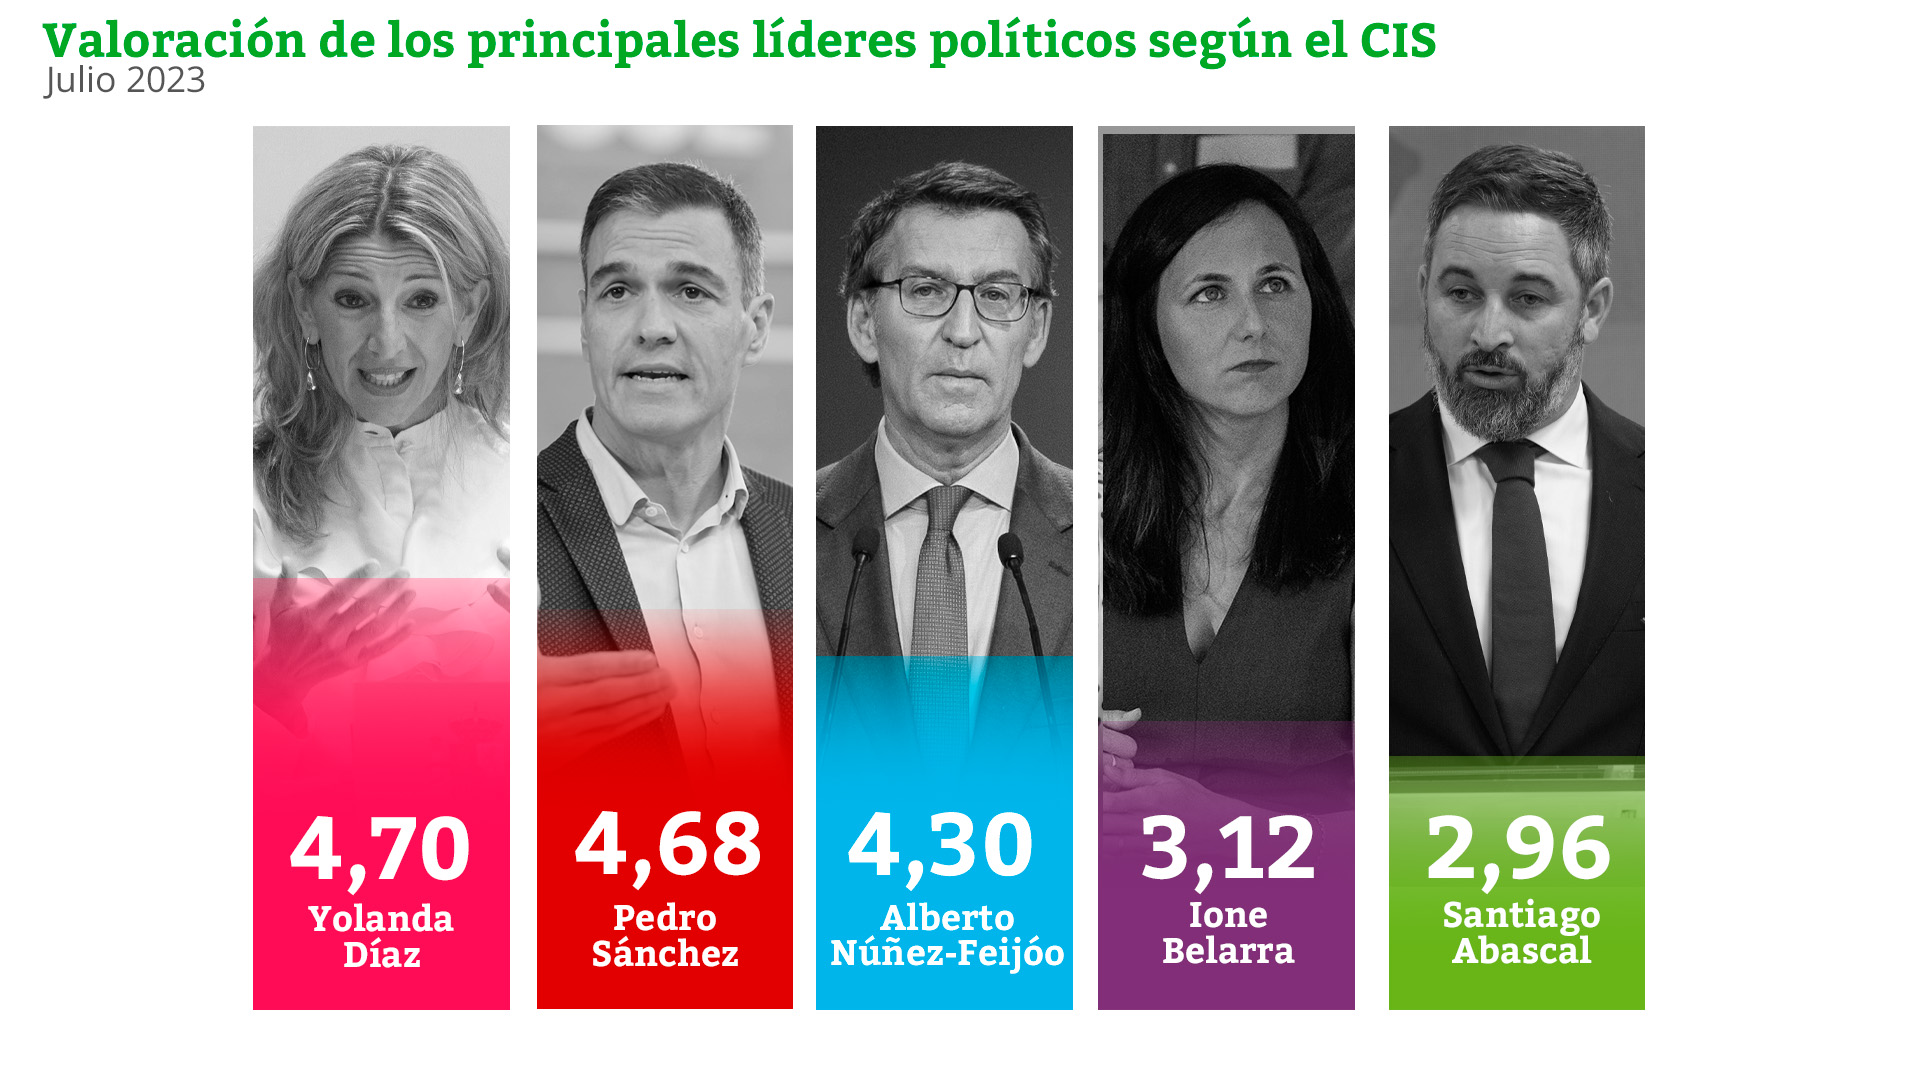 Valoración de líderes políticos en el barómetro del CIS preelectoral